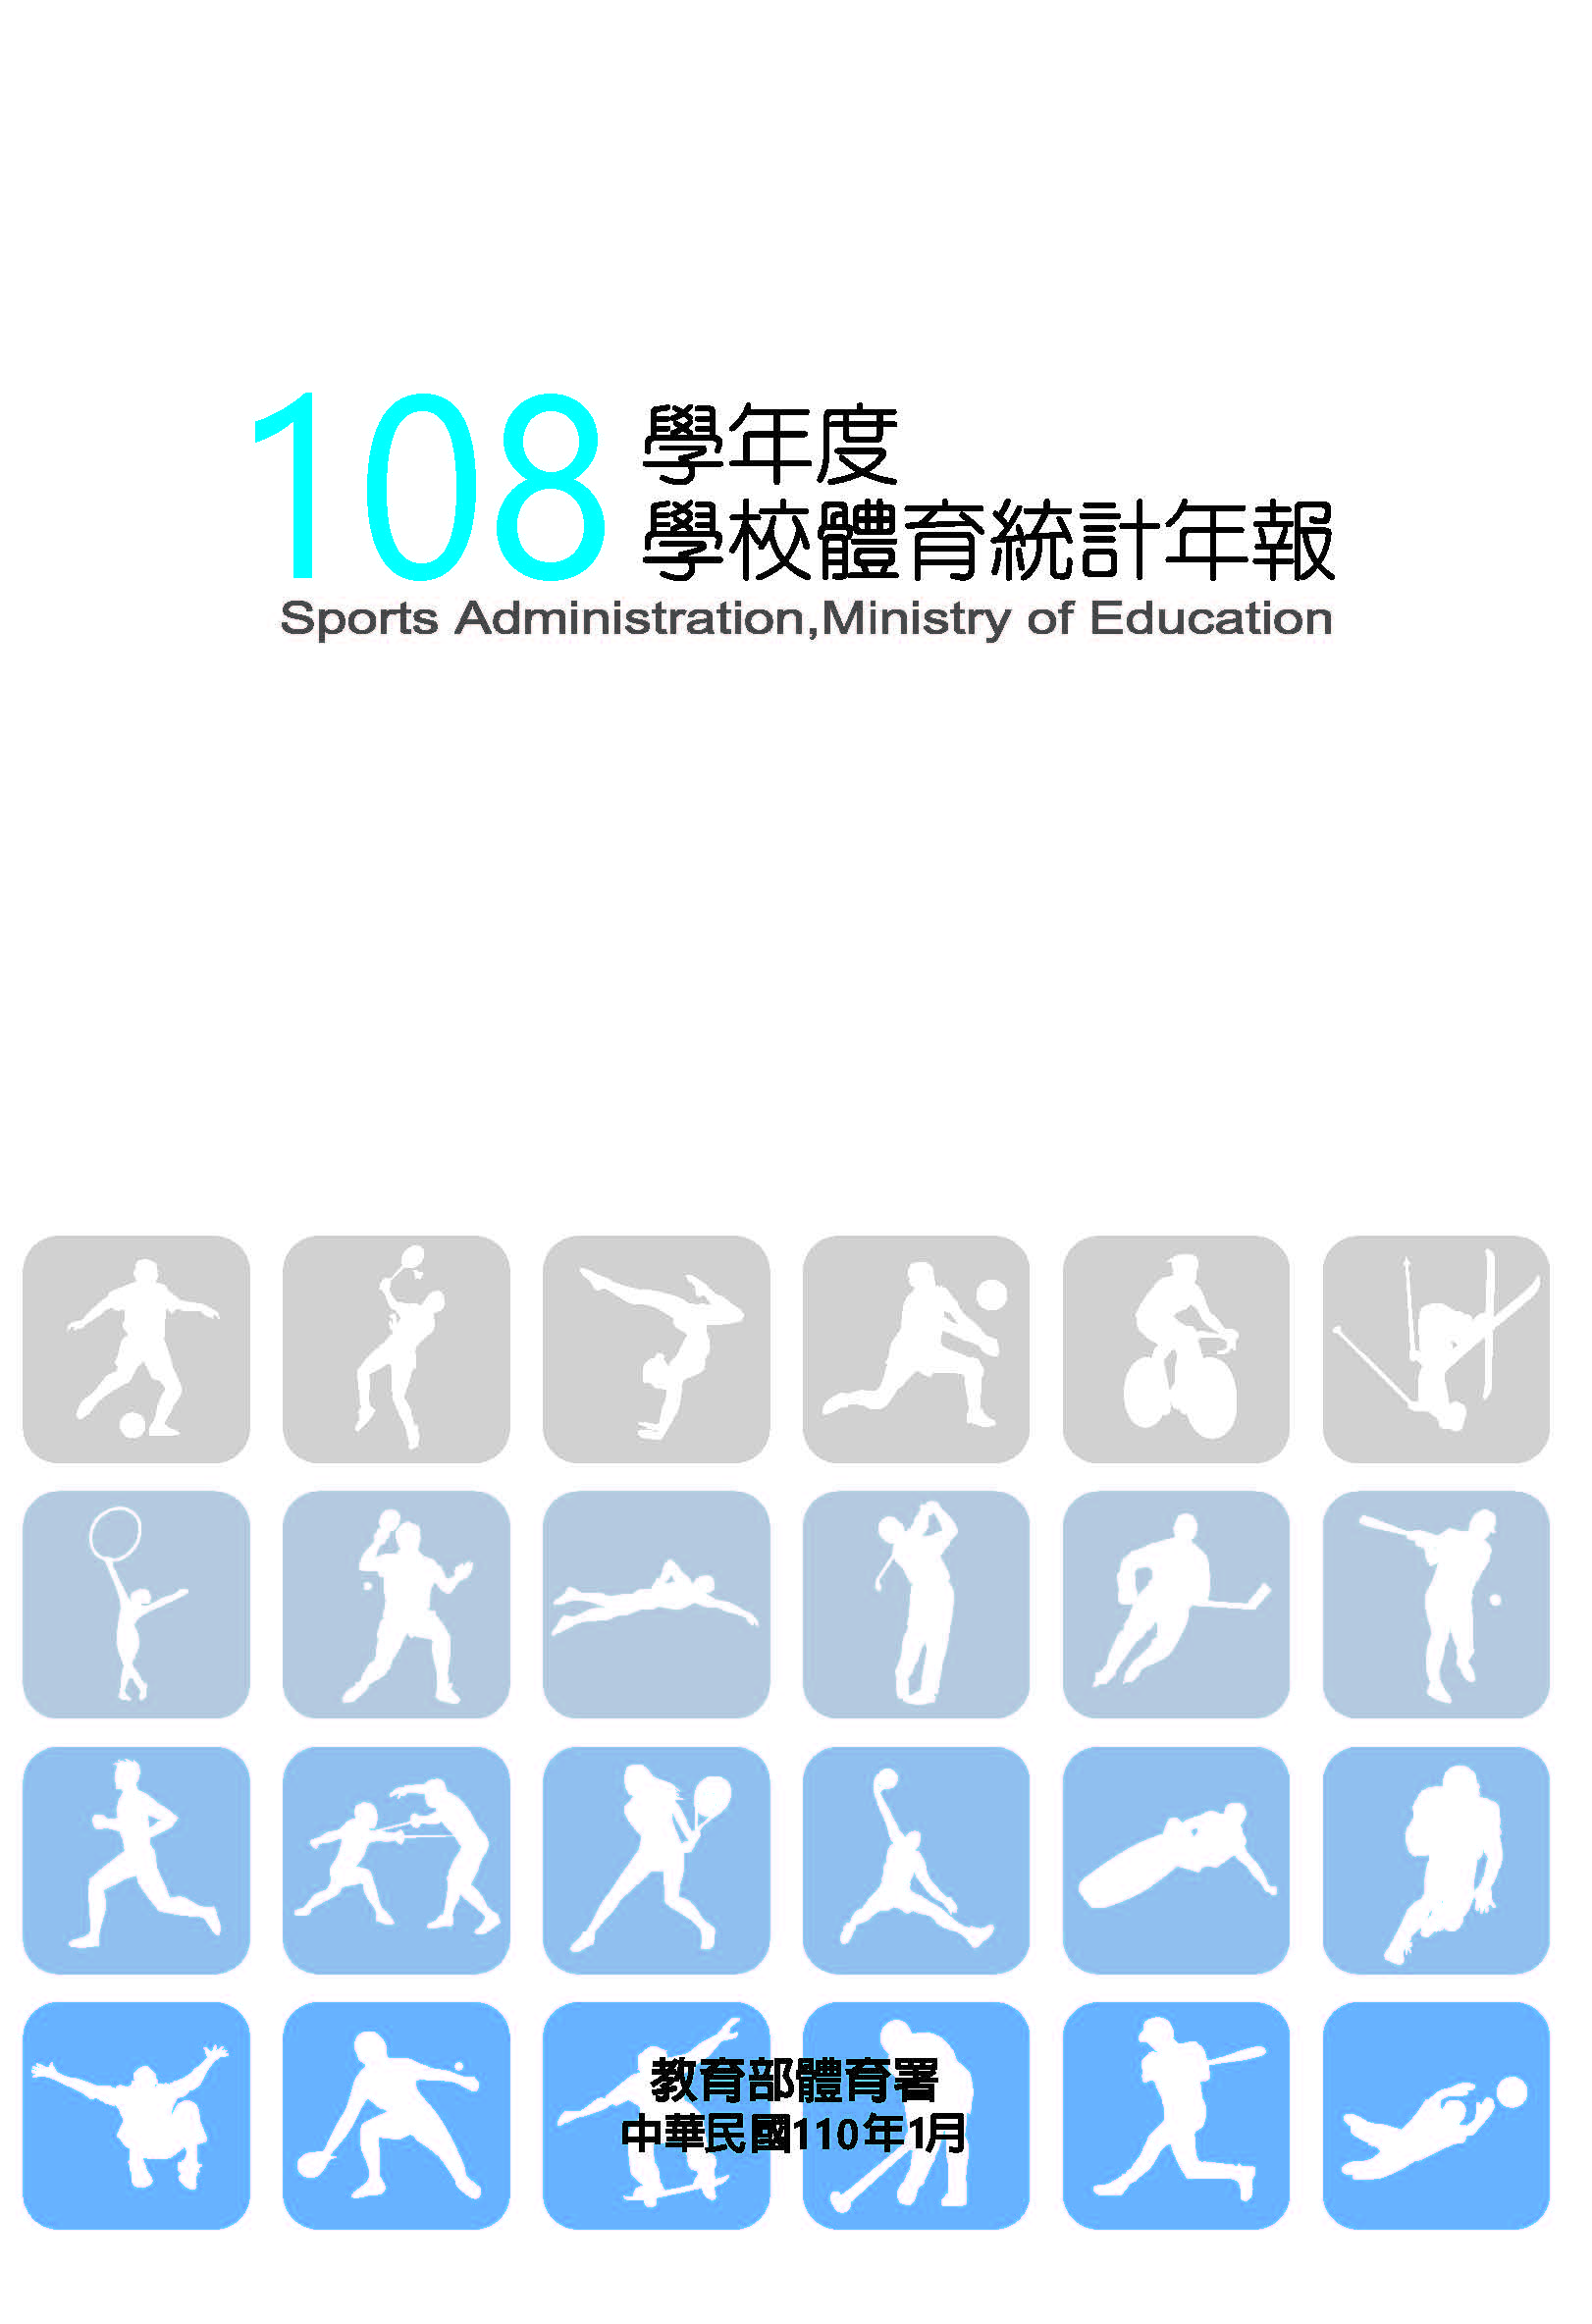 108學年度學校體育統計年報